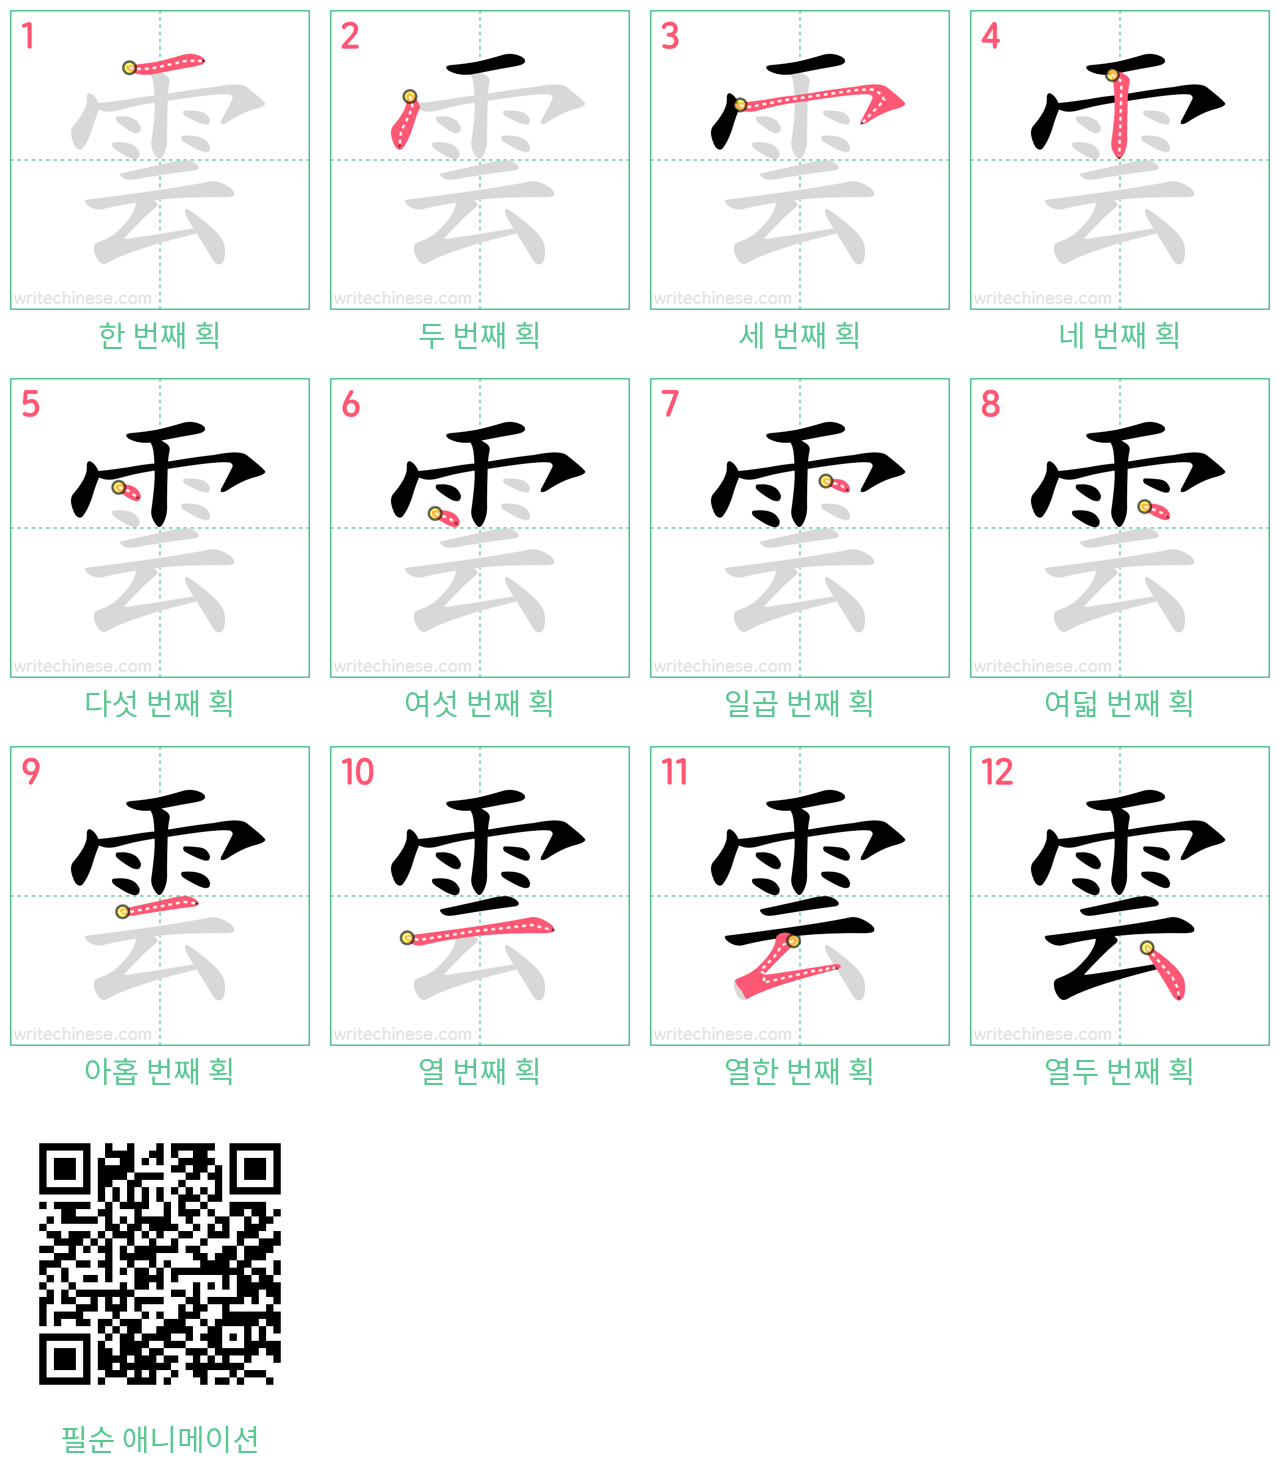 雲 step-by-step stroke order diagrams